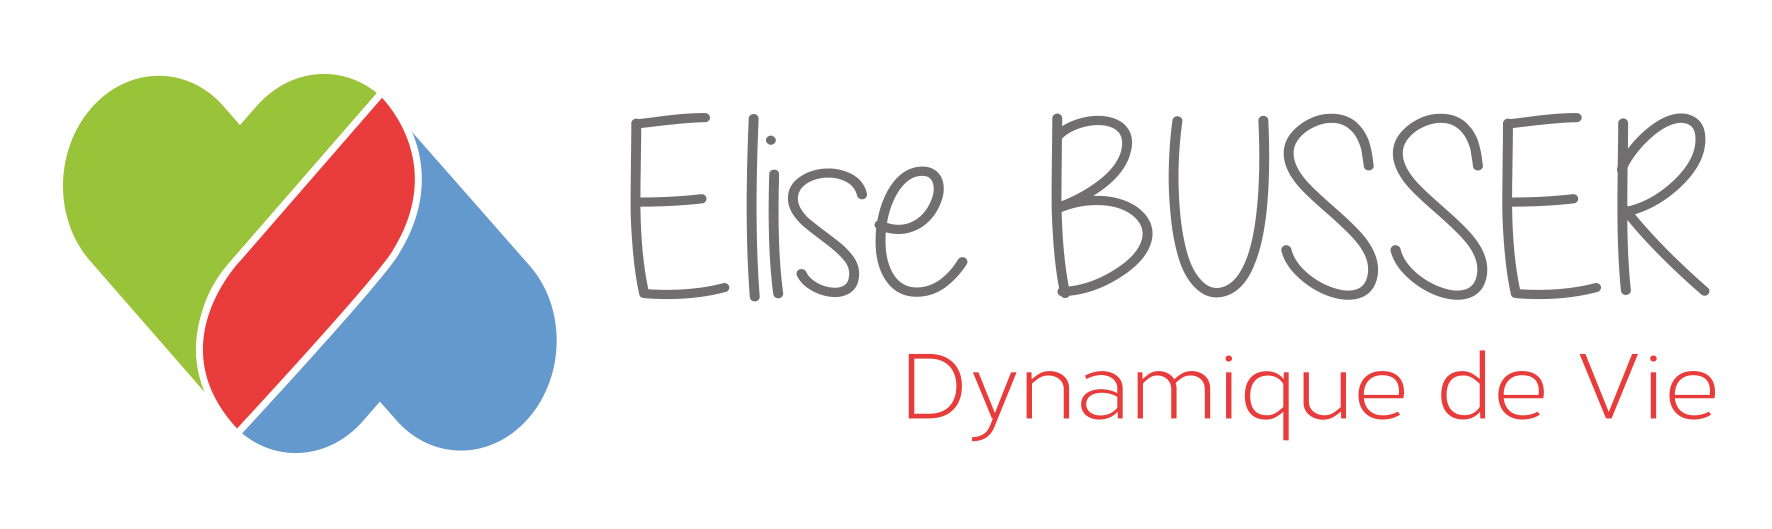 Elise Busser